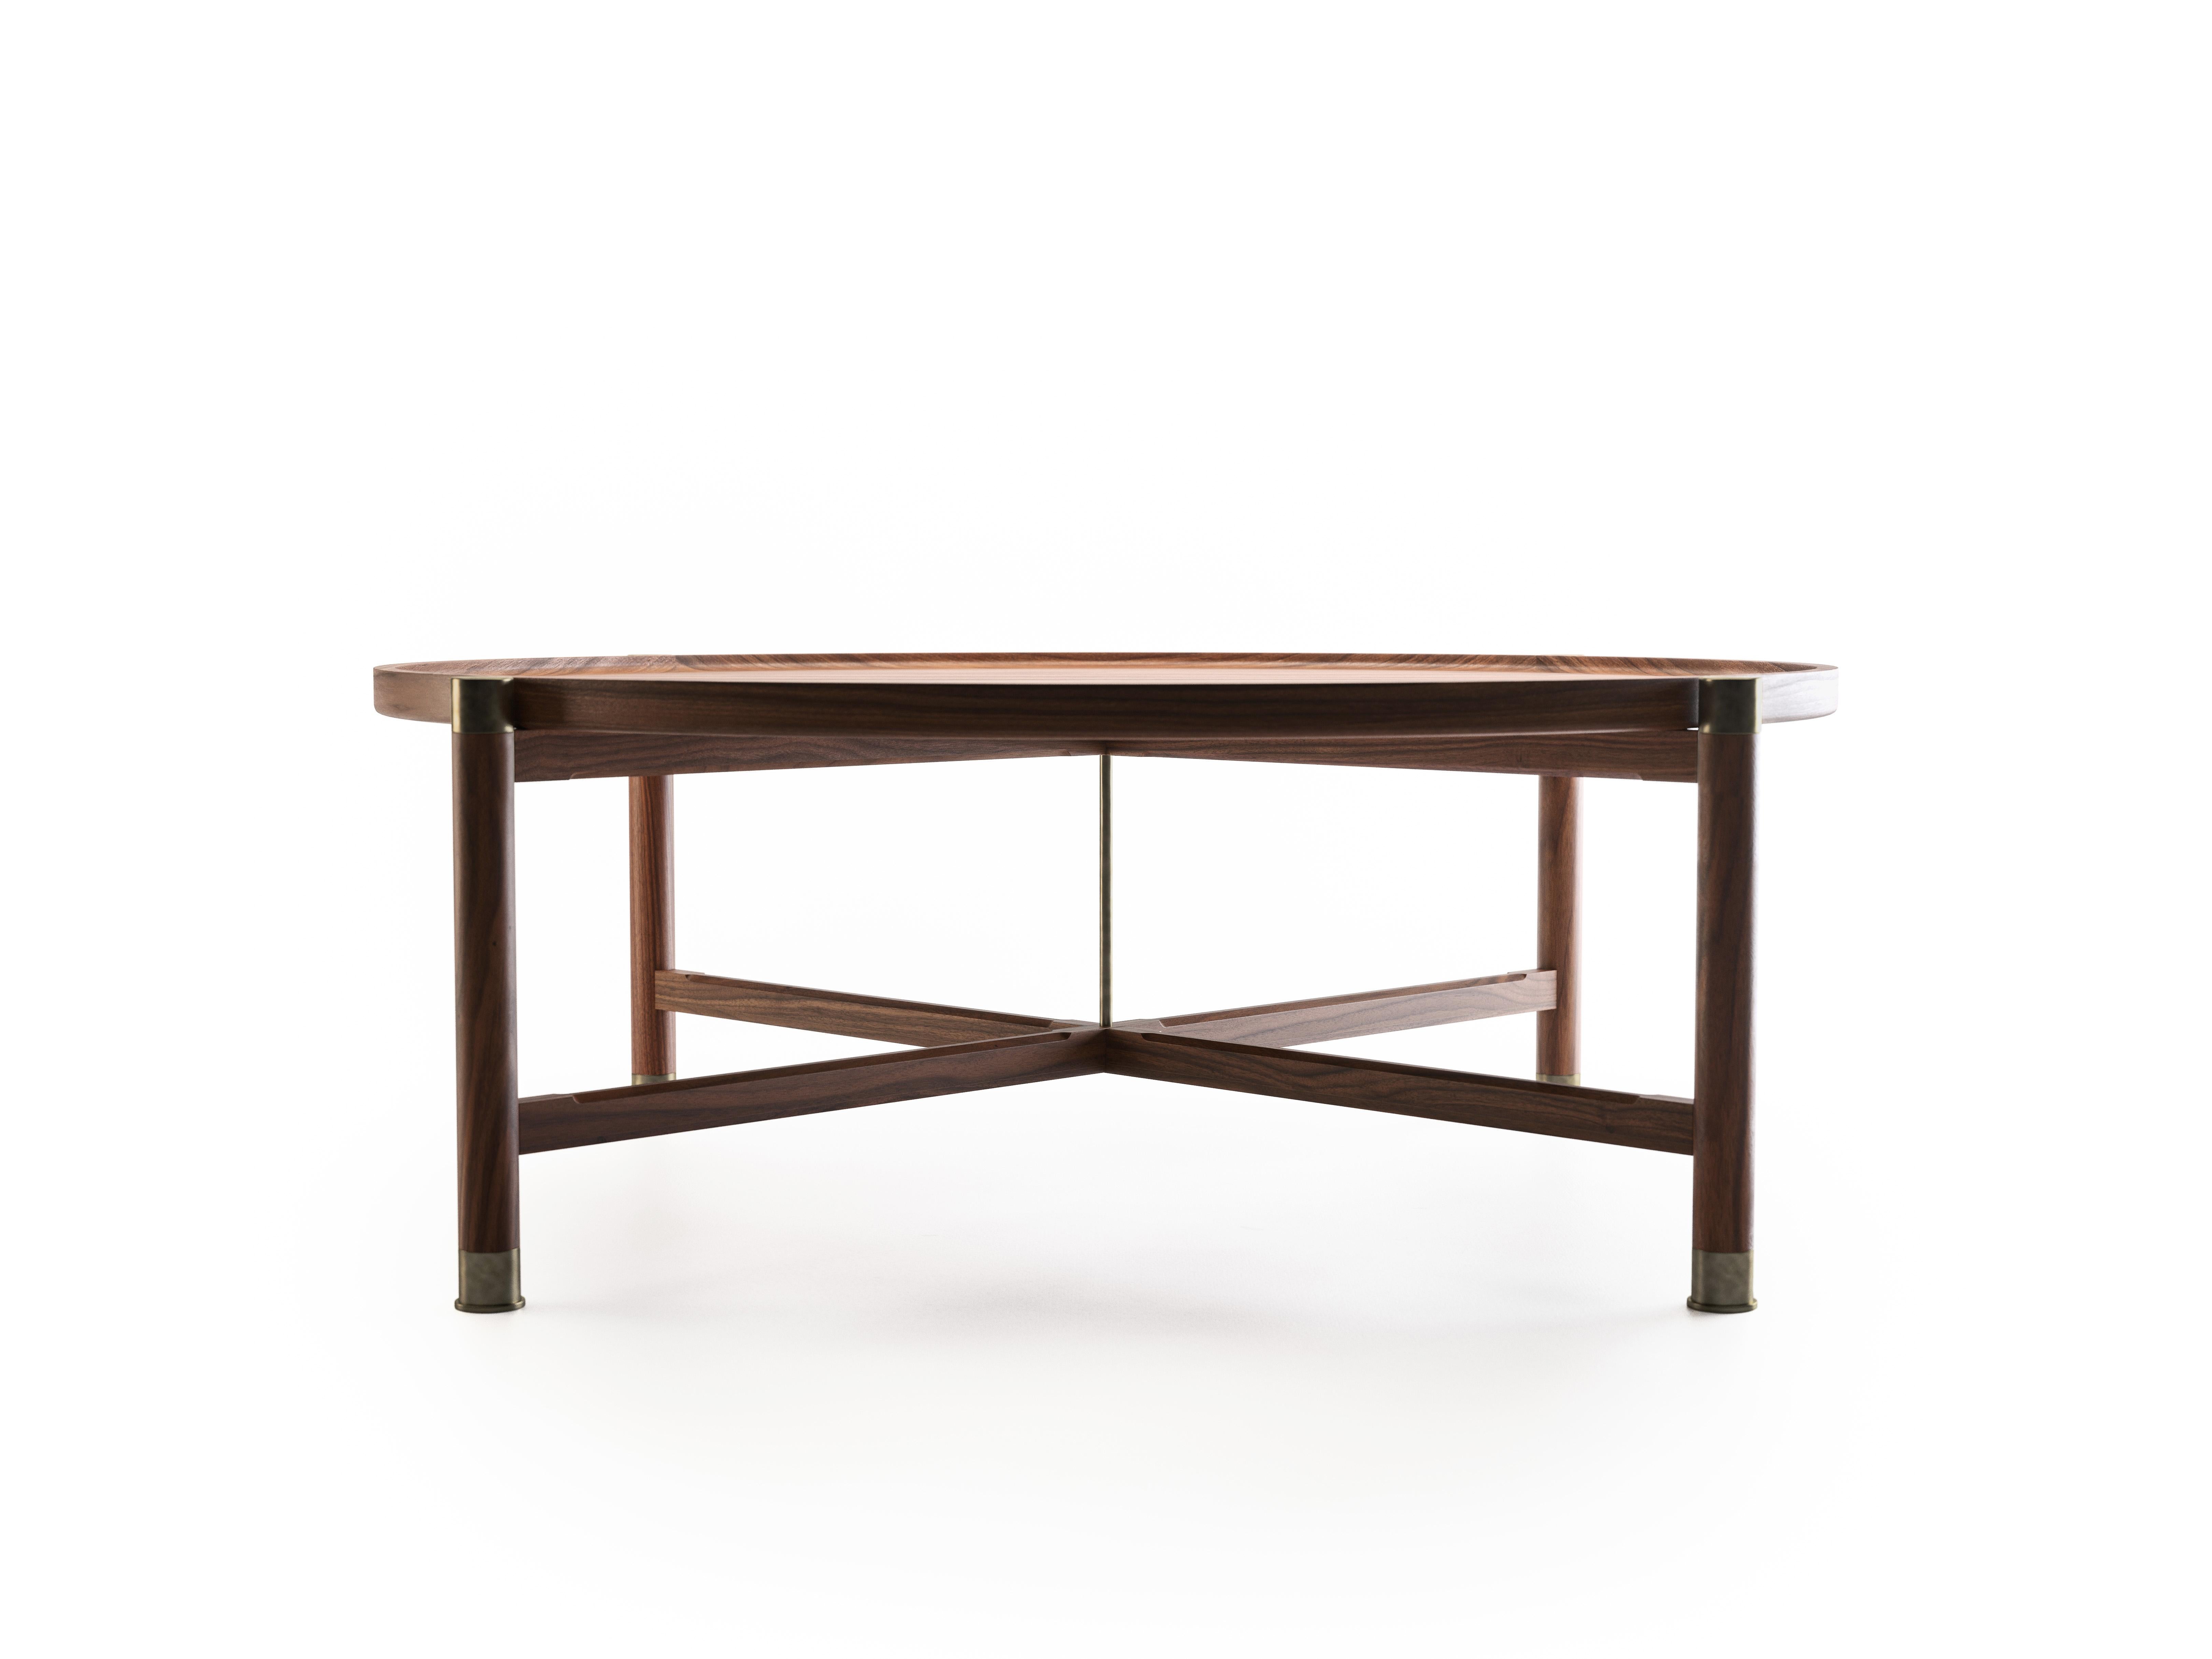 La table basse Otto est une belle table aux proportions généreuses et à la forme intemporelle.
Disponible en noyer ou en chêne, il est doté d'un plateau coupé rond, d'importantes ferrures en laiton antique et d'élégants châssis chanfreinés.